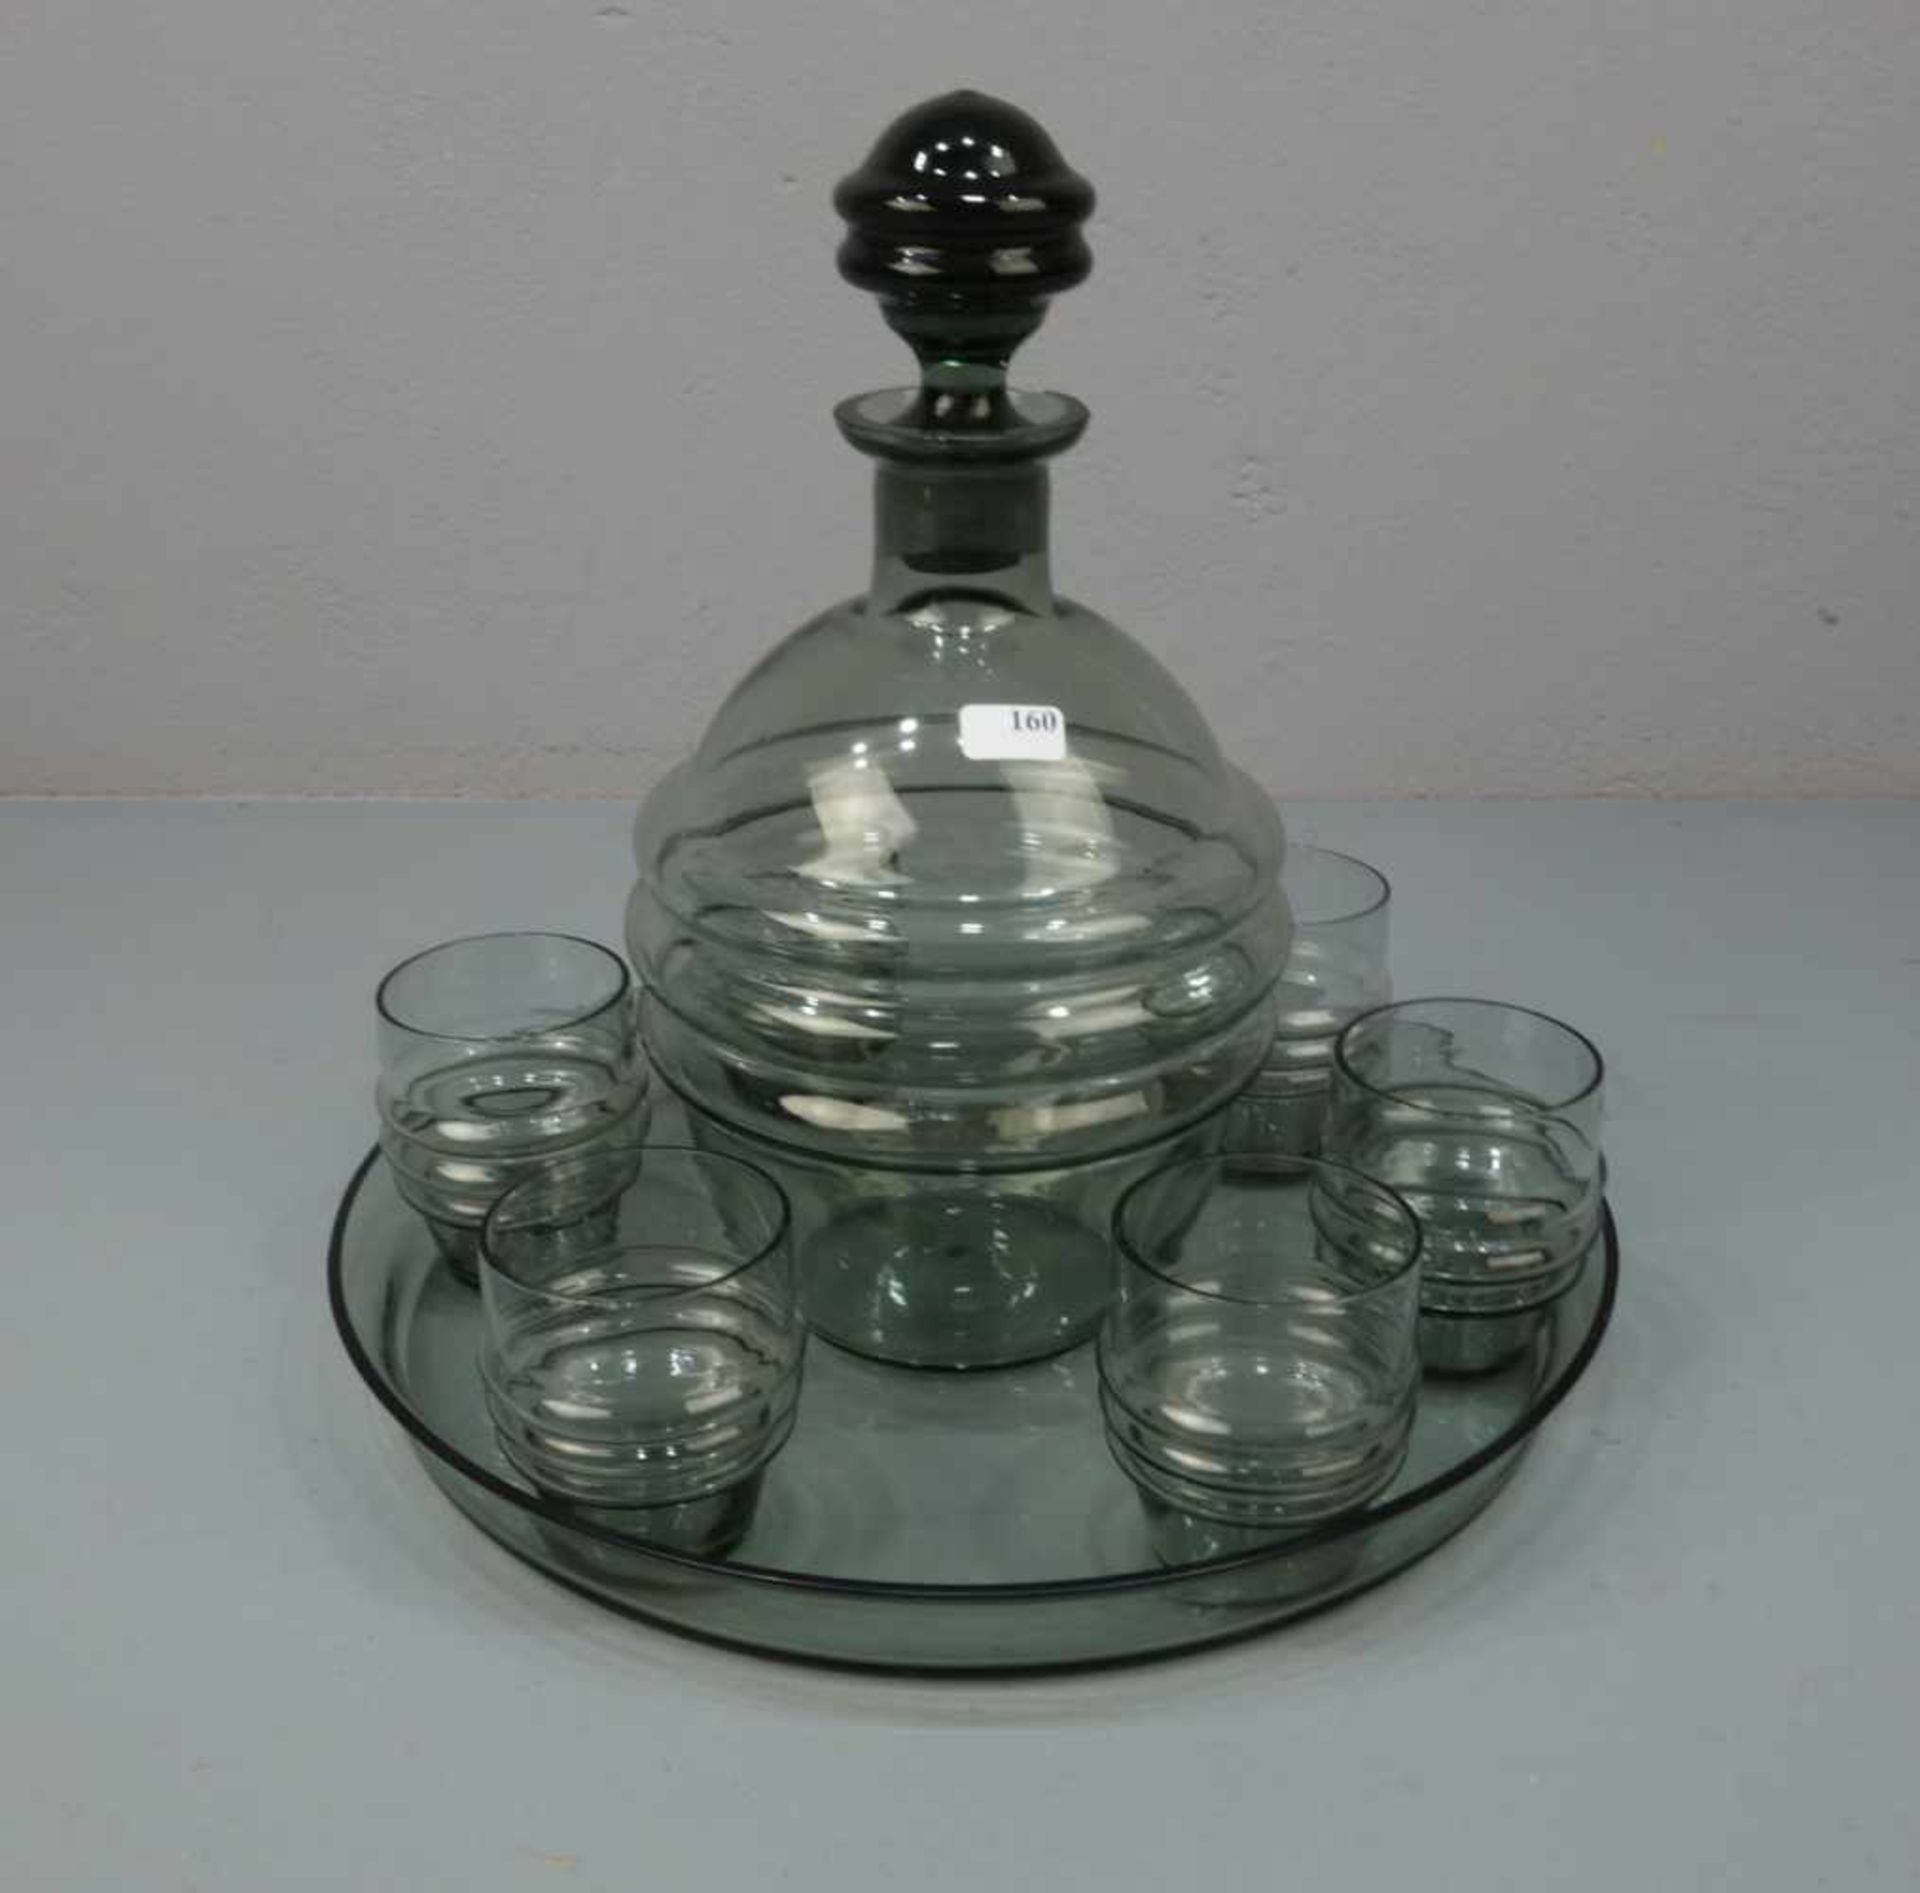 ART DÉCO - LIKÖRSET: Karaffe und 6 Gläser auf Tablett, Rauchglas, grau gefärbt, um 1920. Rundes